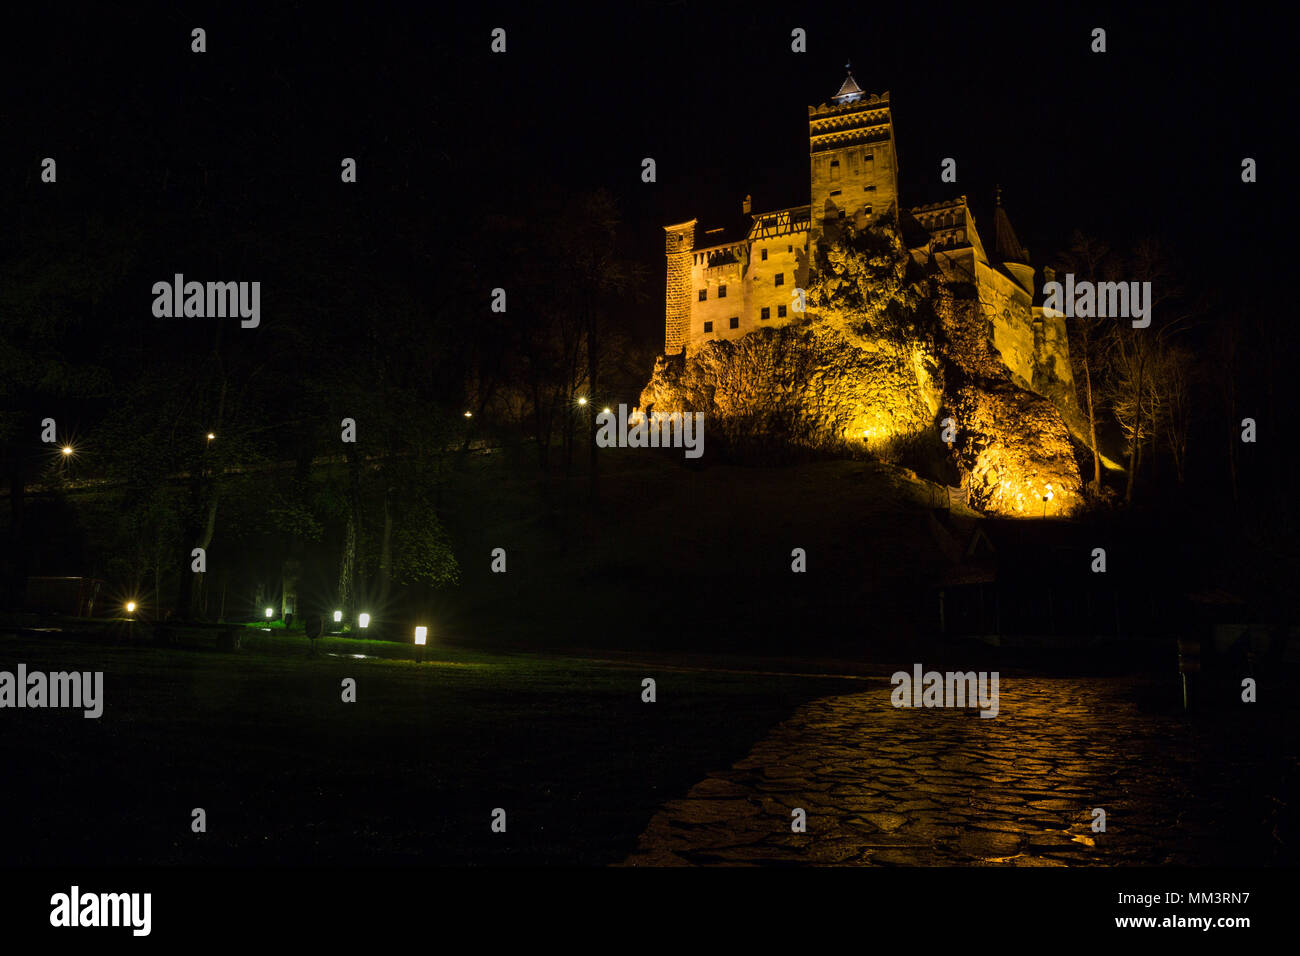 Bran Castle by night, Transylvania, Romania Stock Photo